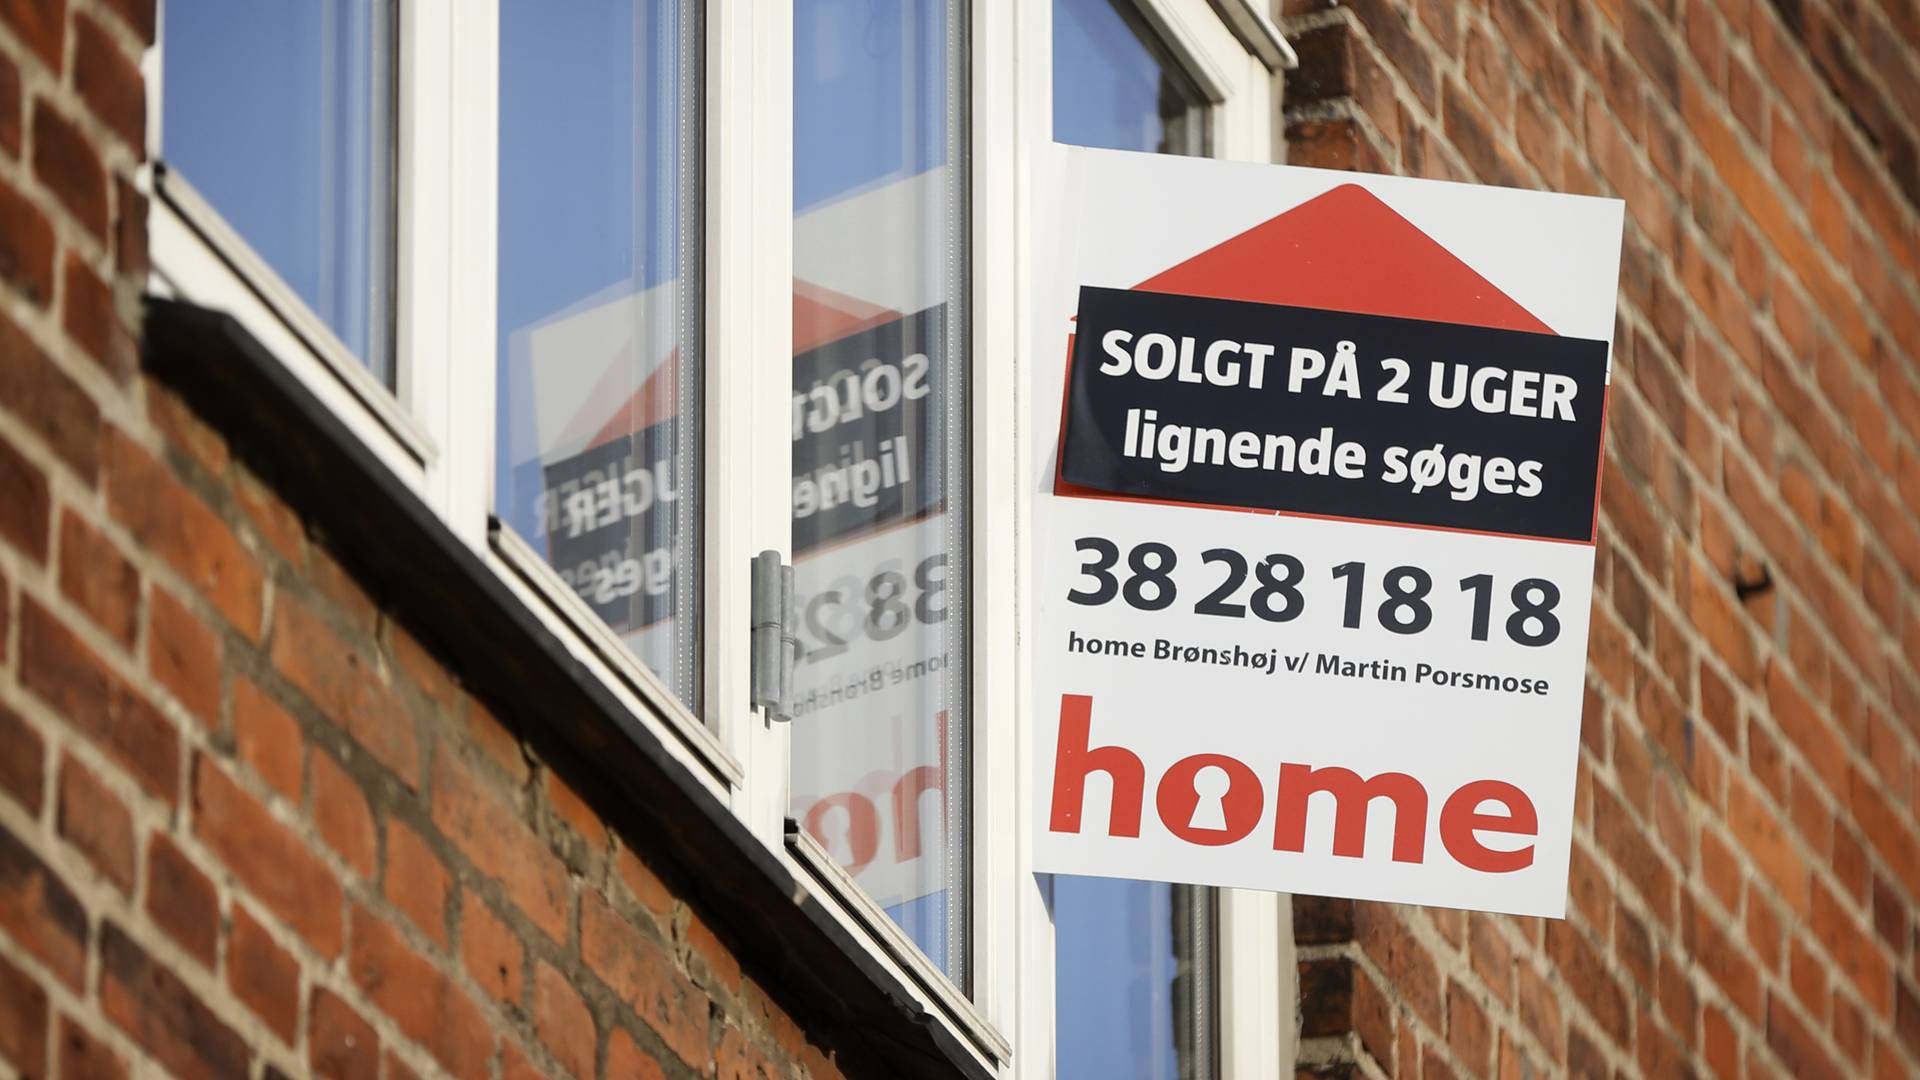 Der kan komme pres på boligpriserne, hvis rentestigningerne fortsætter. | Foto: Jens Dresling